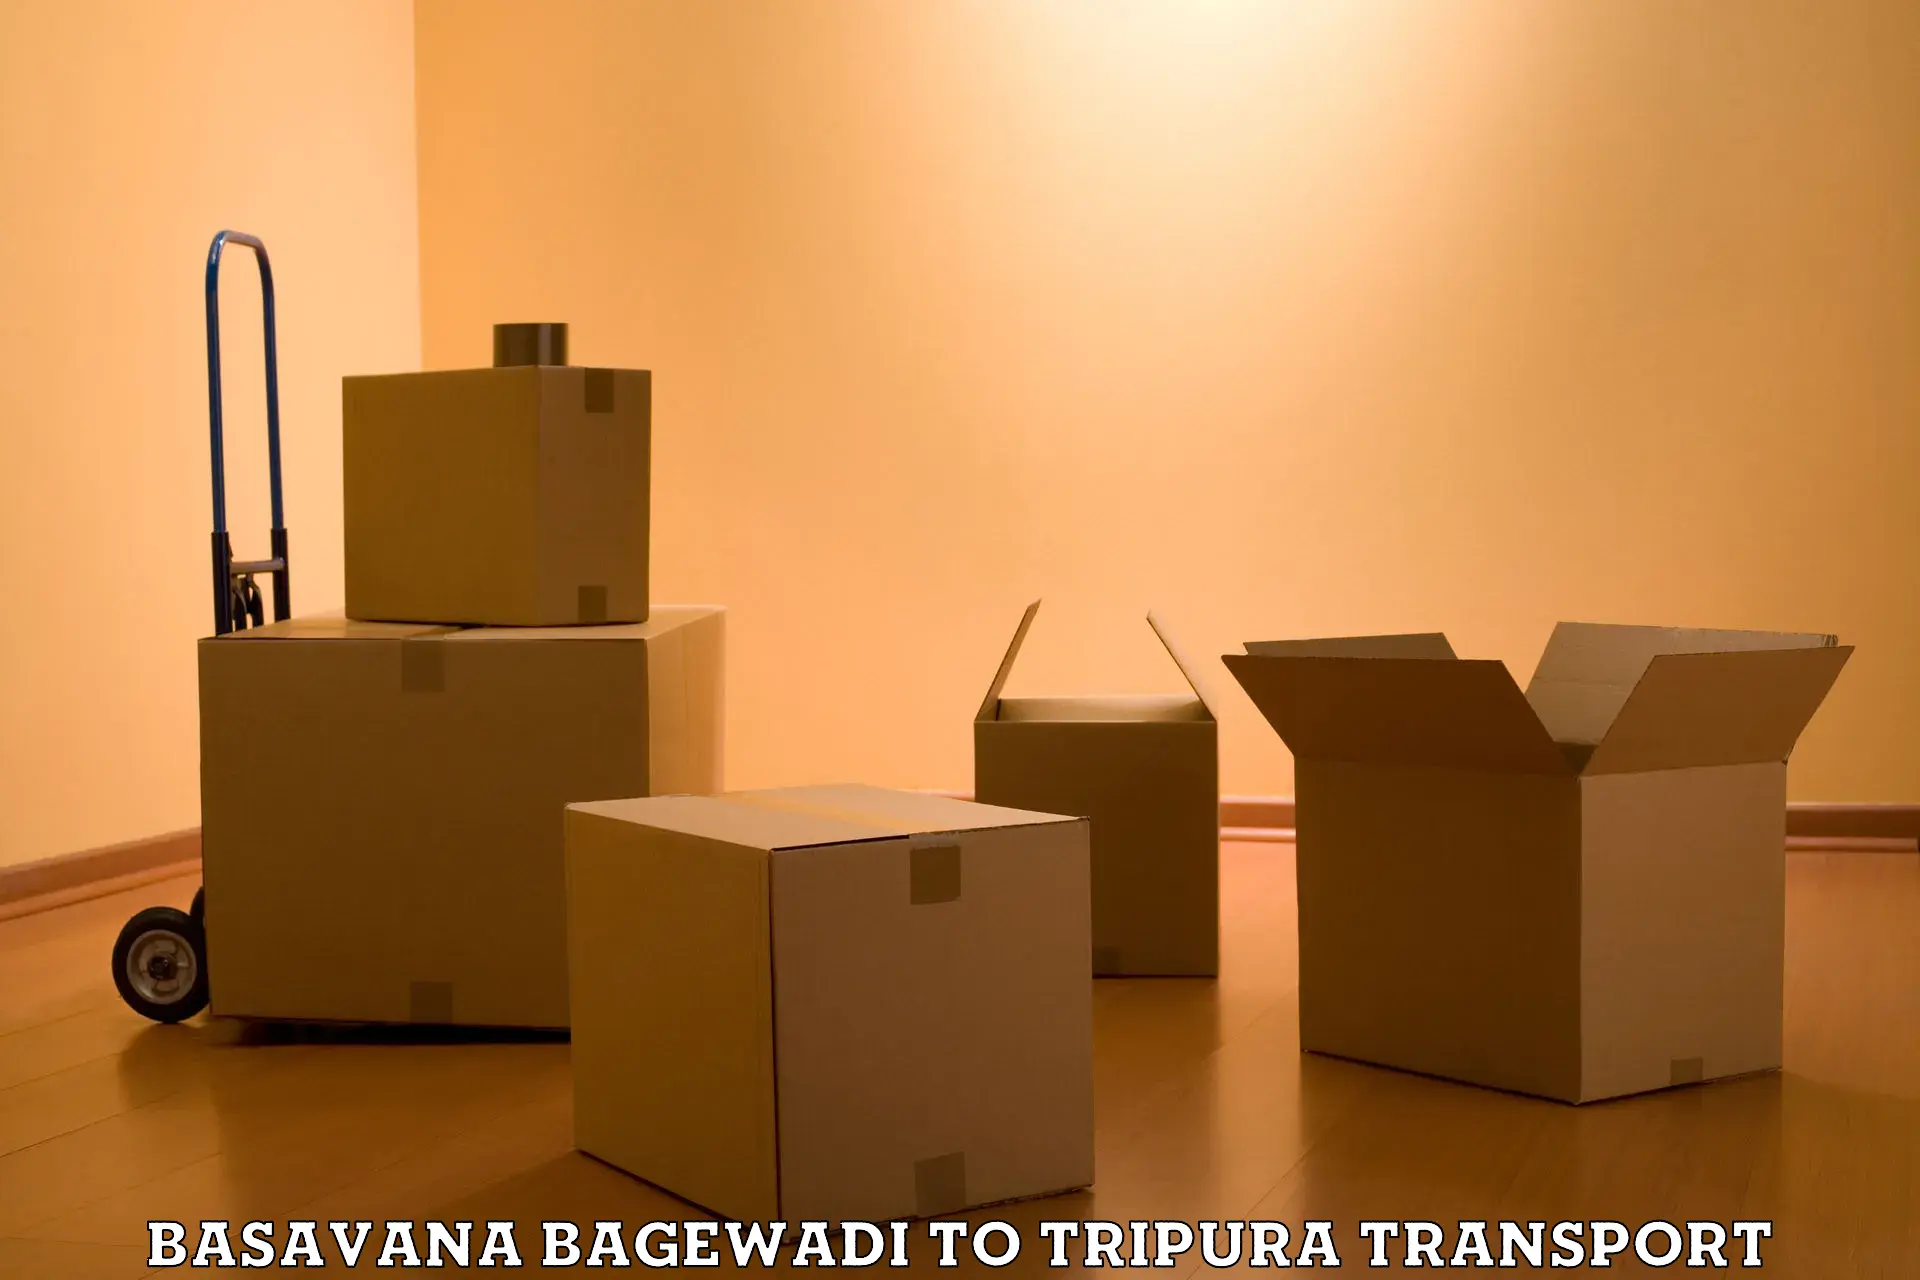 Lorry transport service Basavana Bagewadi to Tripura